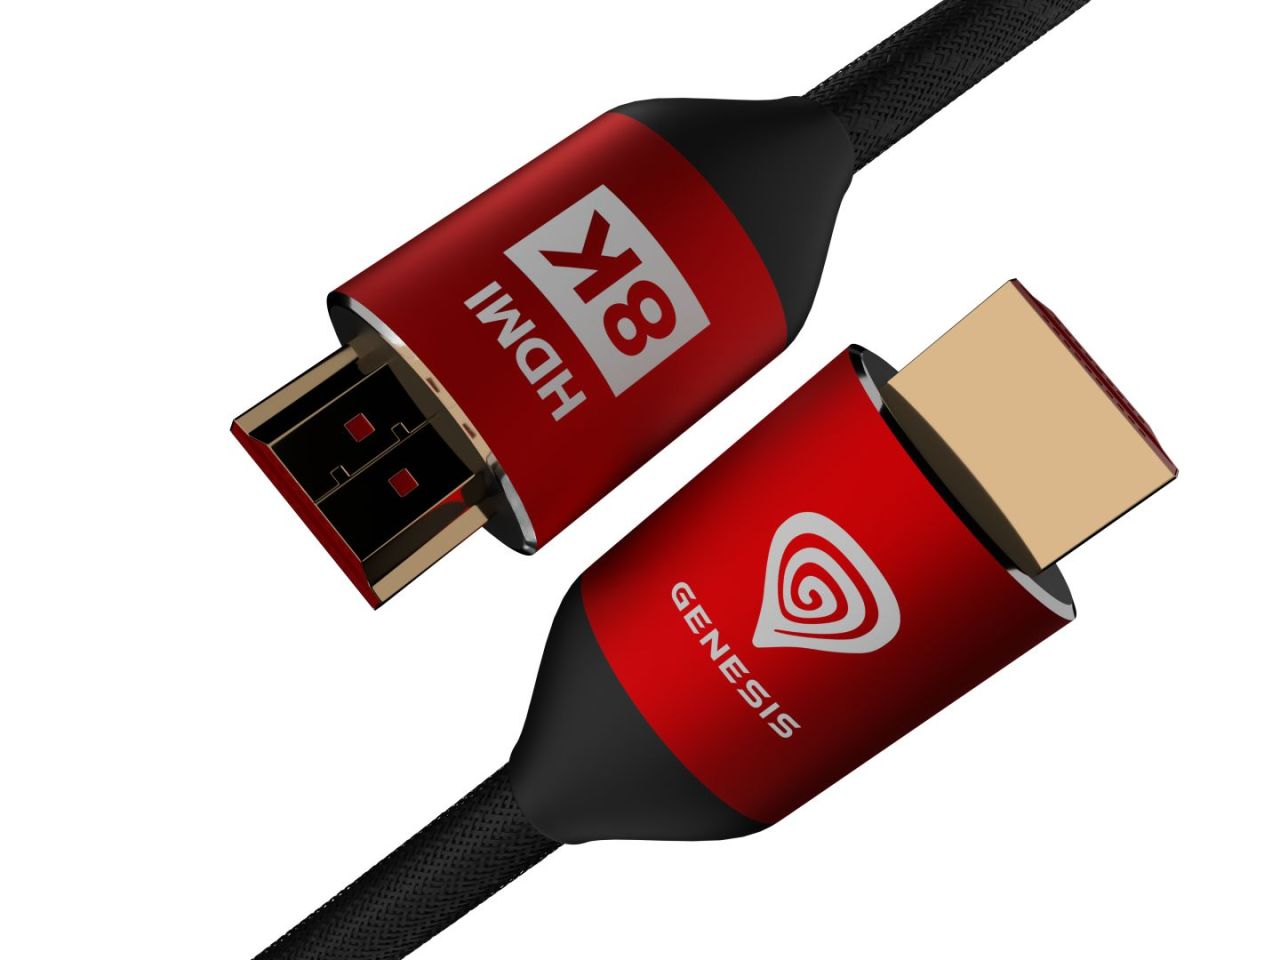 Baseus HDMI 8K compatible with XSX cable 0,3m Black